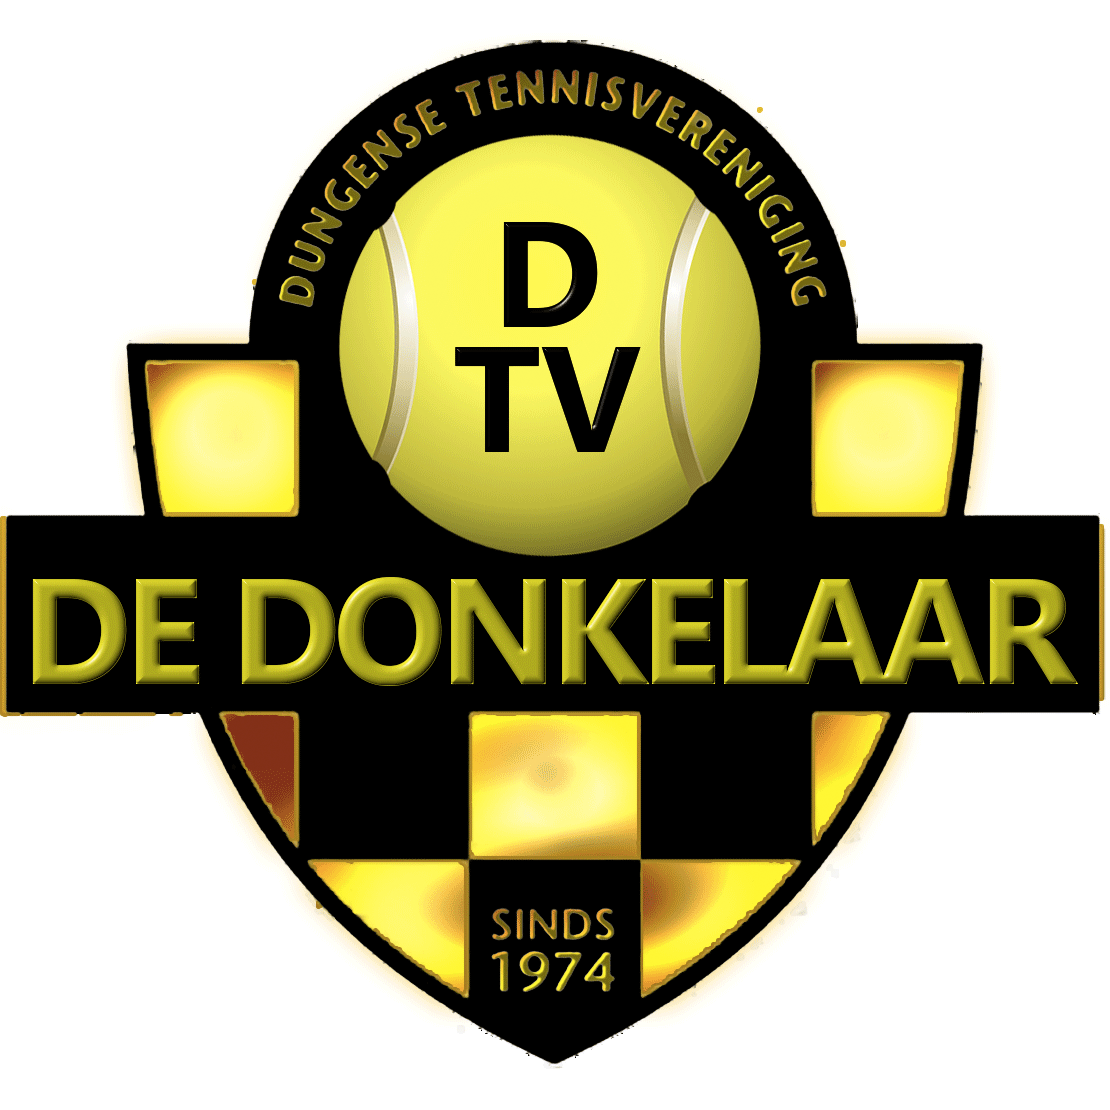 Profile image of venue DTV De Donkelaar